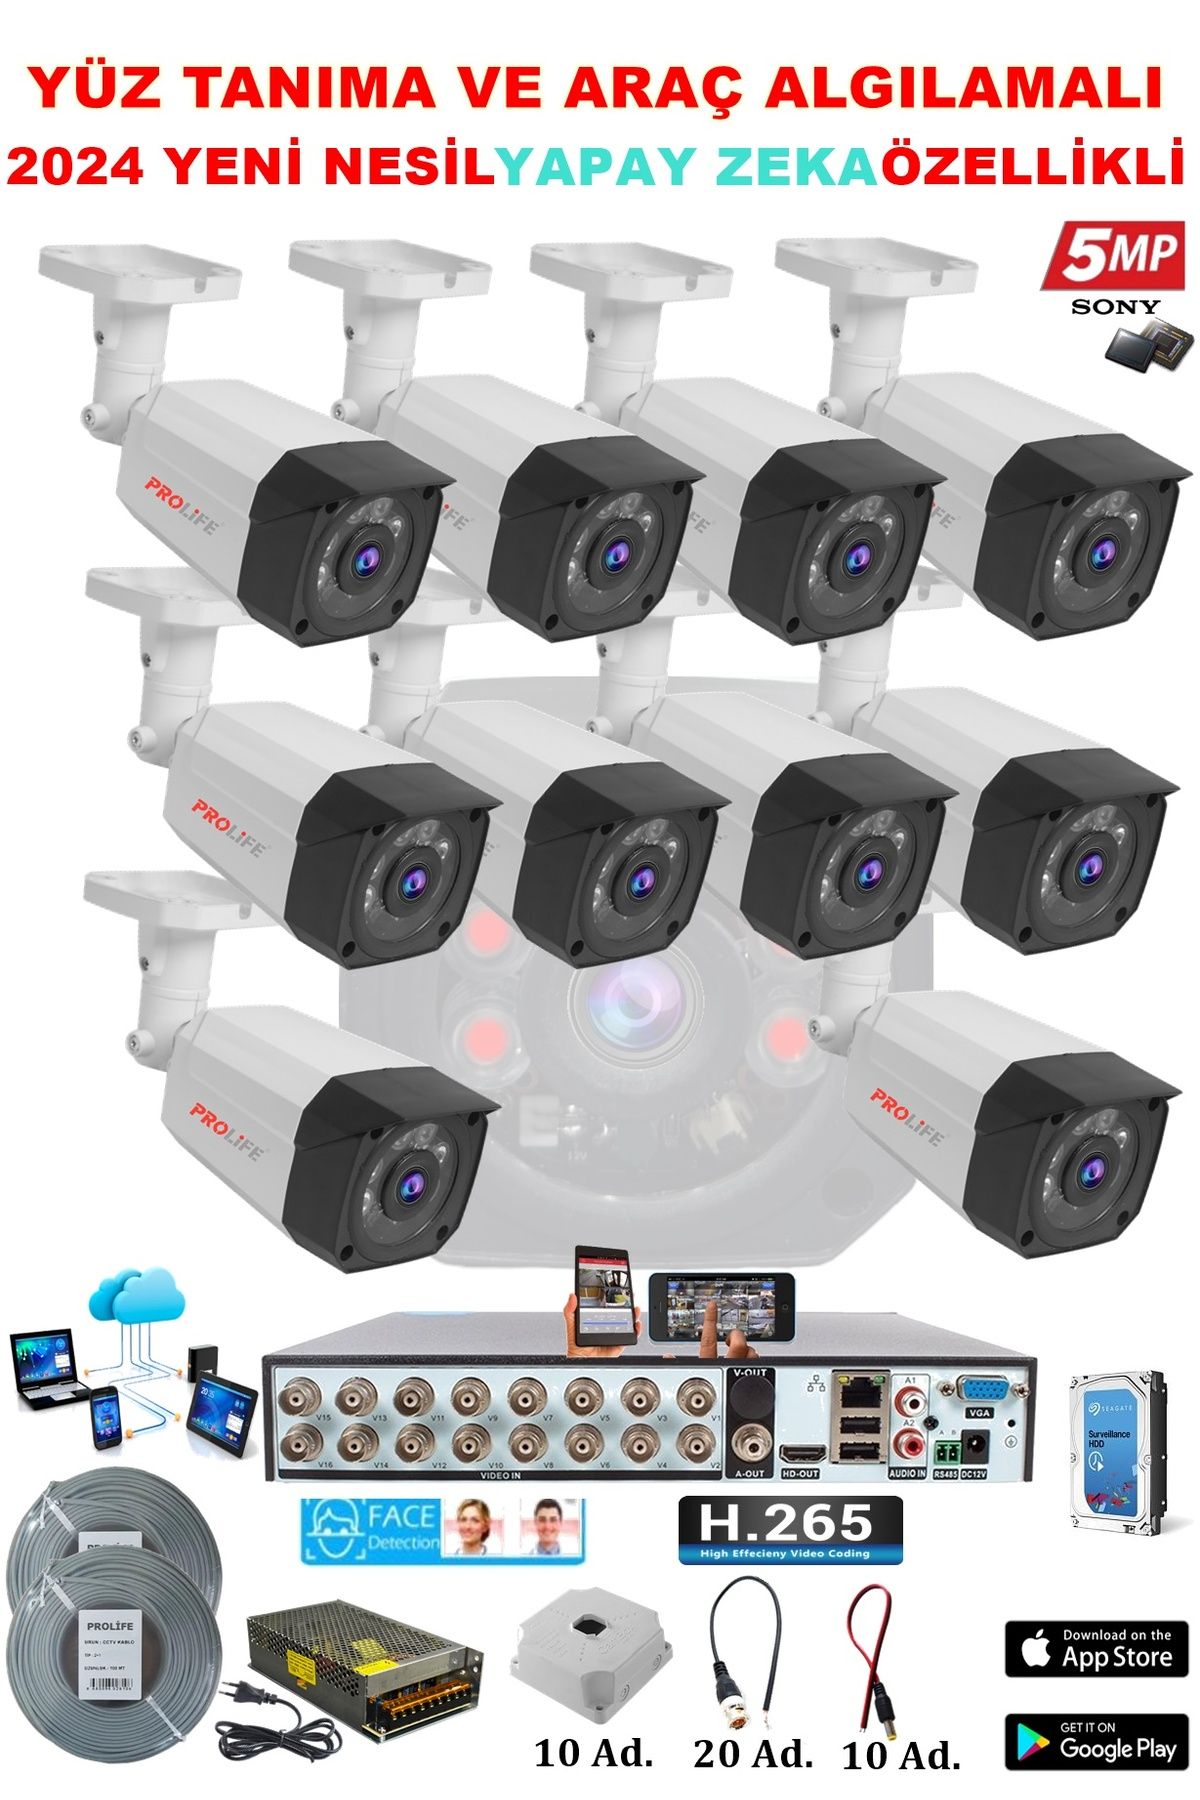 PROLİFE 10 Kameralı Yapay Zeka Özellikli Yüz Tanıma Ve Araç Algılamalı 5 Mp Güvenlik Kamerası Seti